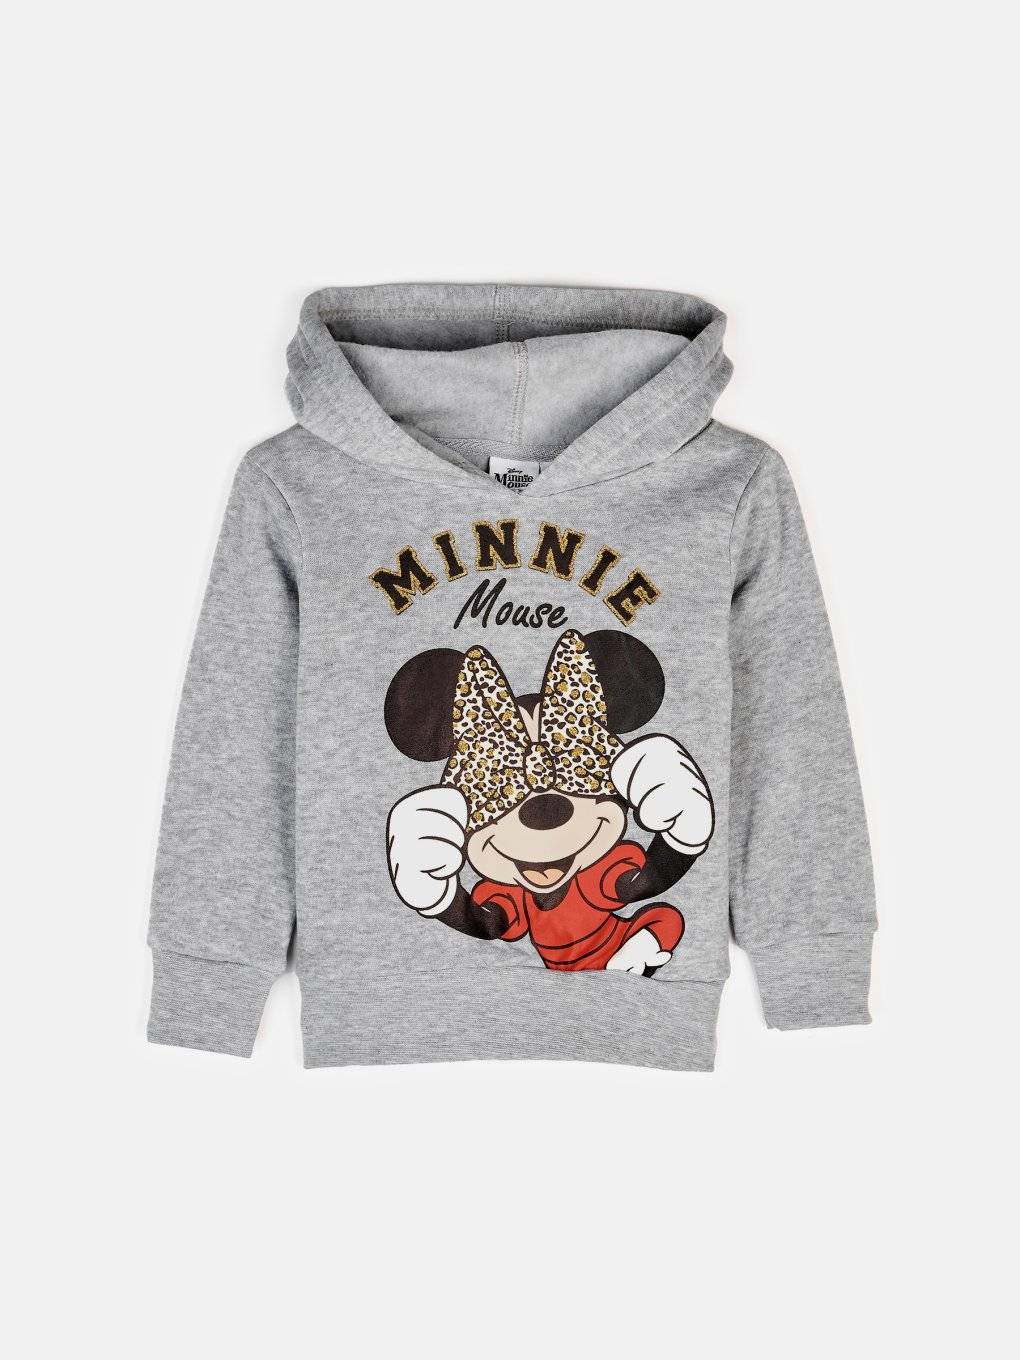 Minnie Mouse melegítőfelső